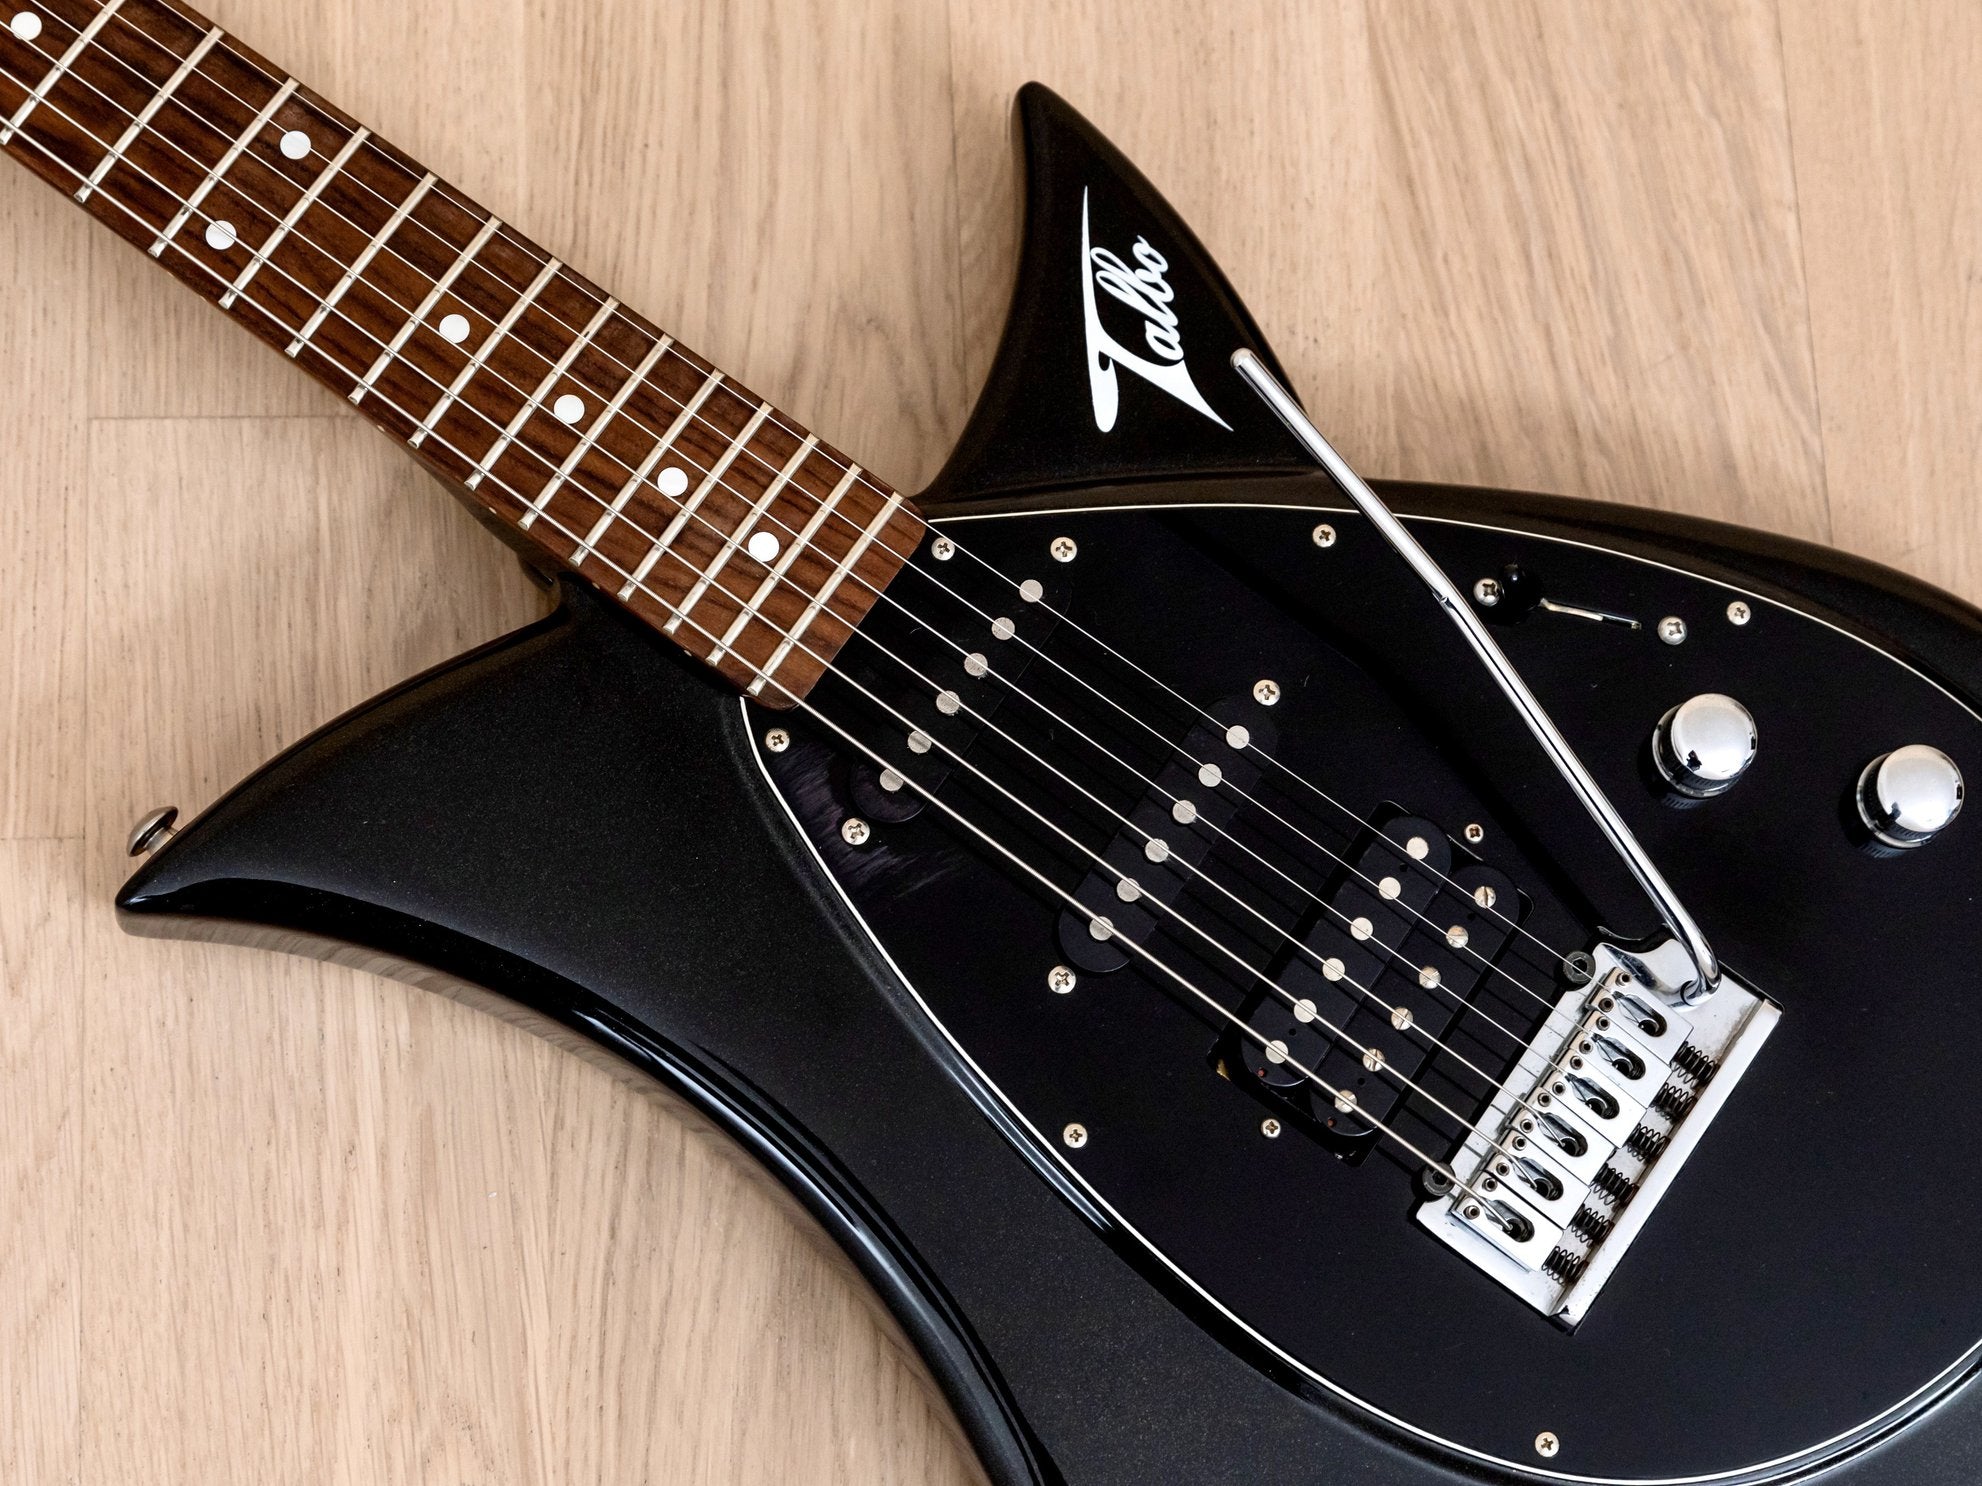 1990s Tokai Talbo A-125SH Aluminum Body Guitar Black Sparkle